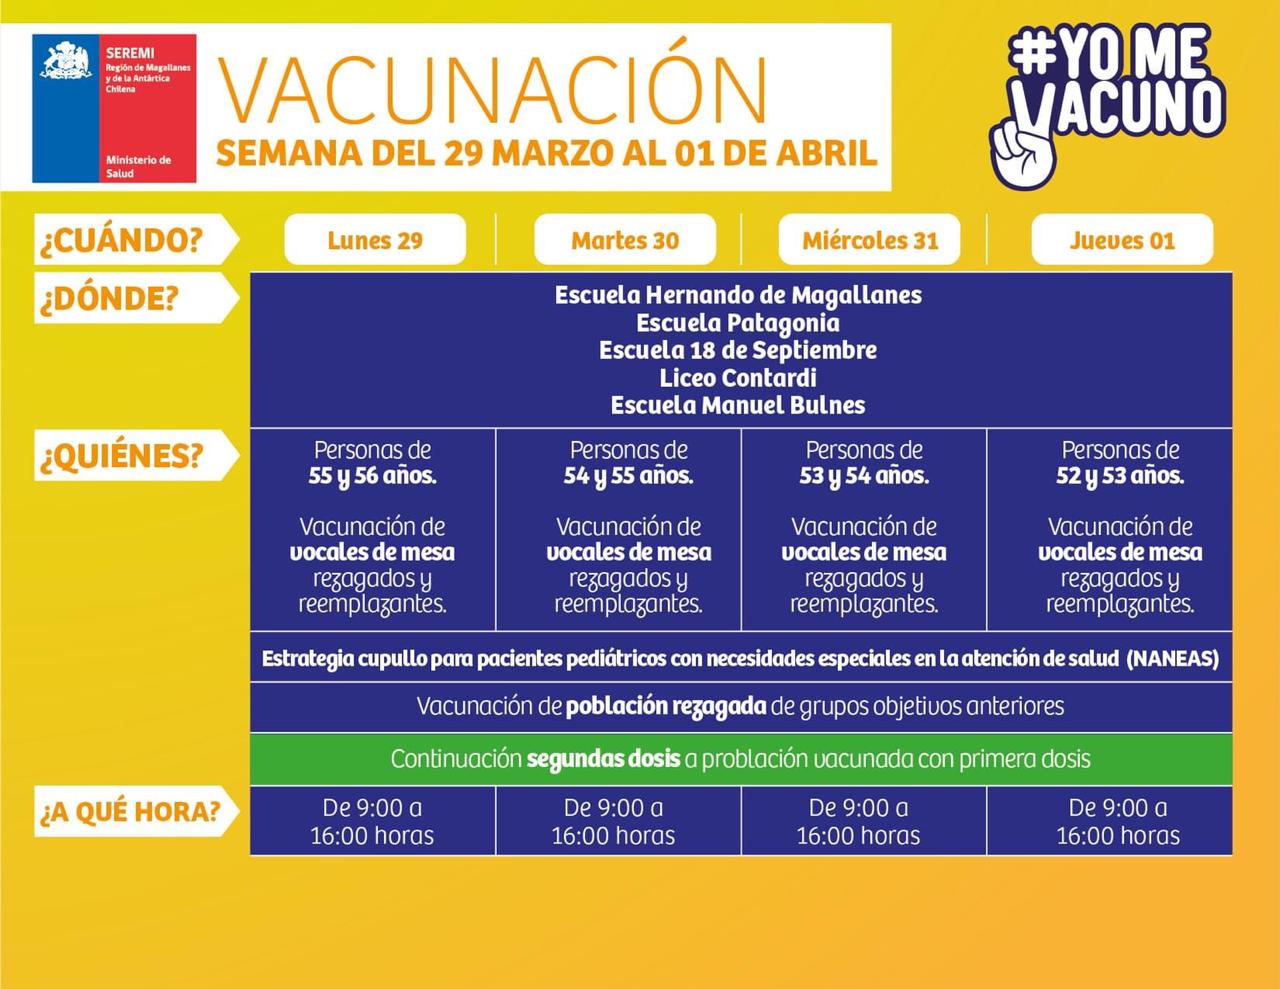 Los lugares de vacunación en Punta Arenas contra el covid-19, desde hoy lunes al jueves 1 de abril